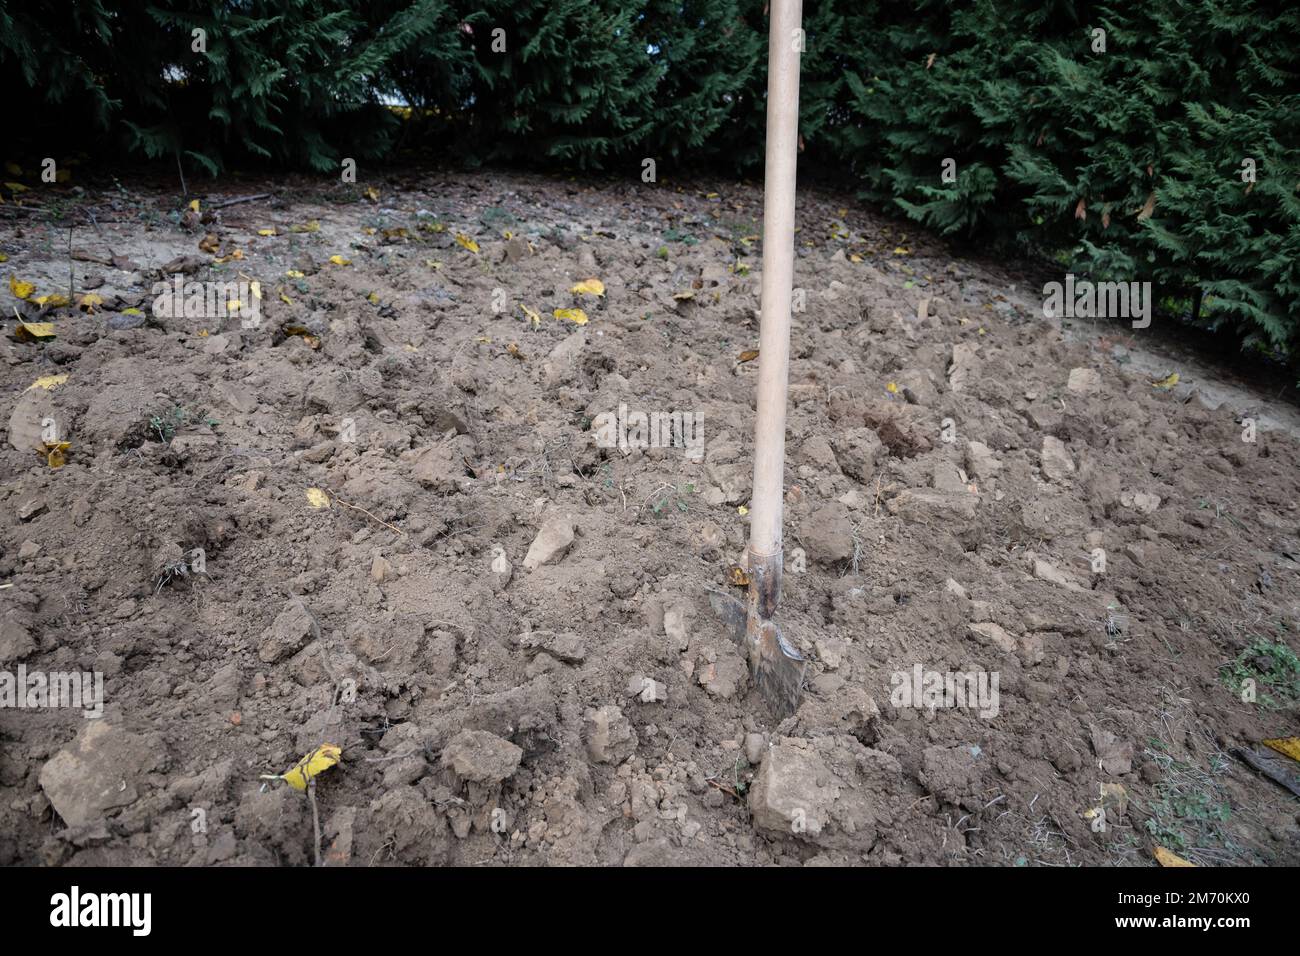 Operazioni di scavo in un orto per preparare il terreno alla semina primaverile. Foto Stock